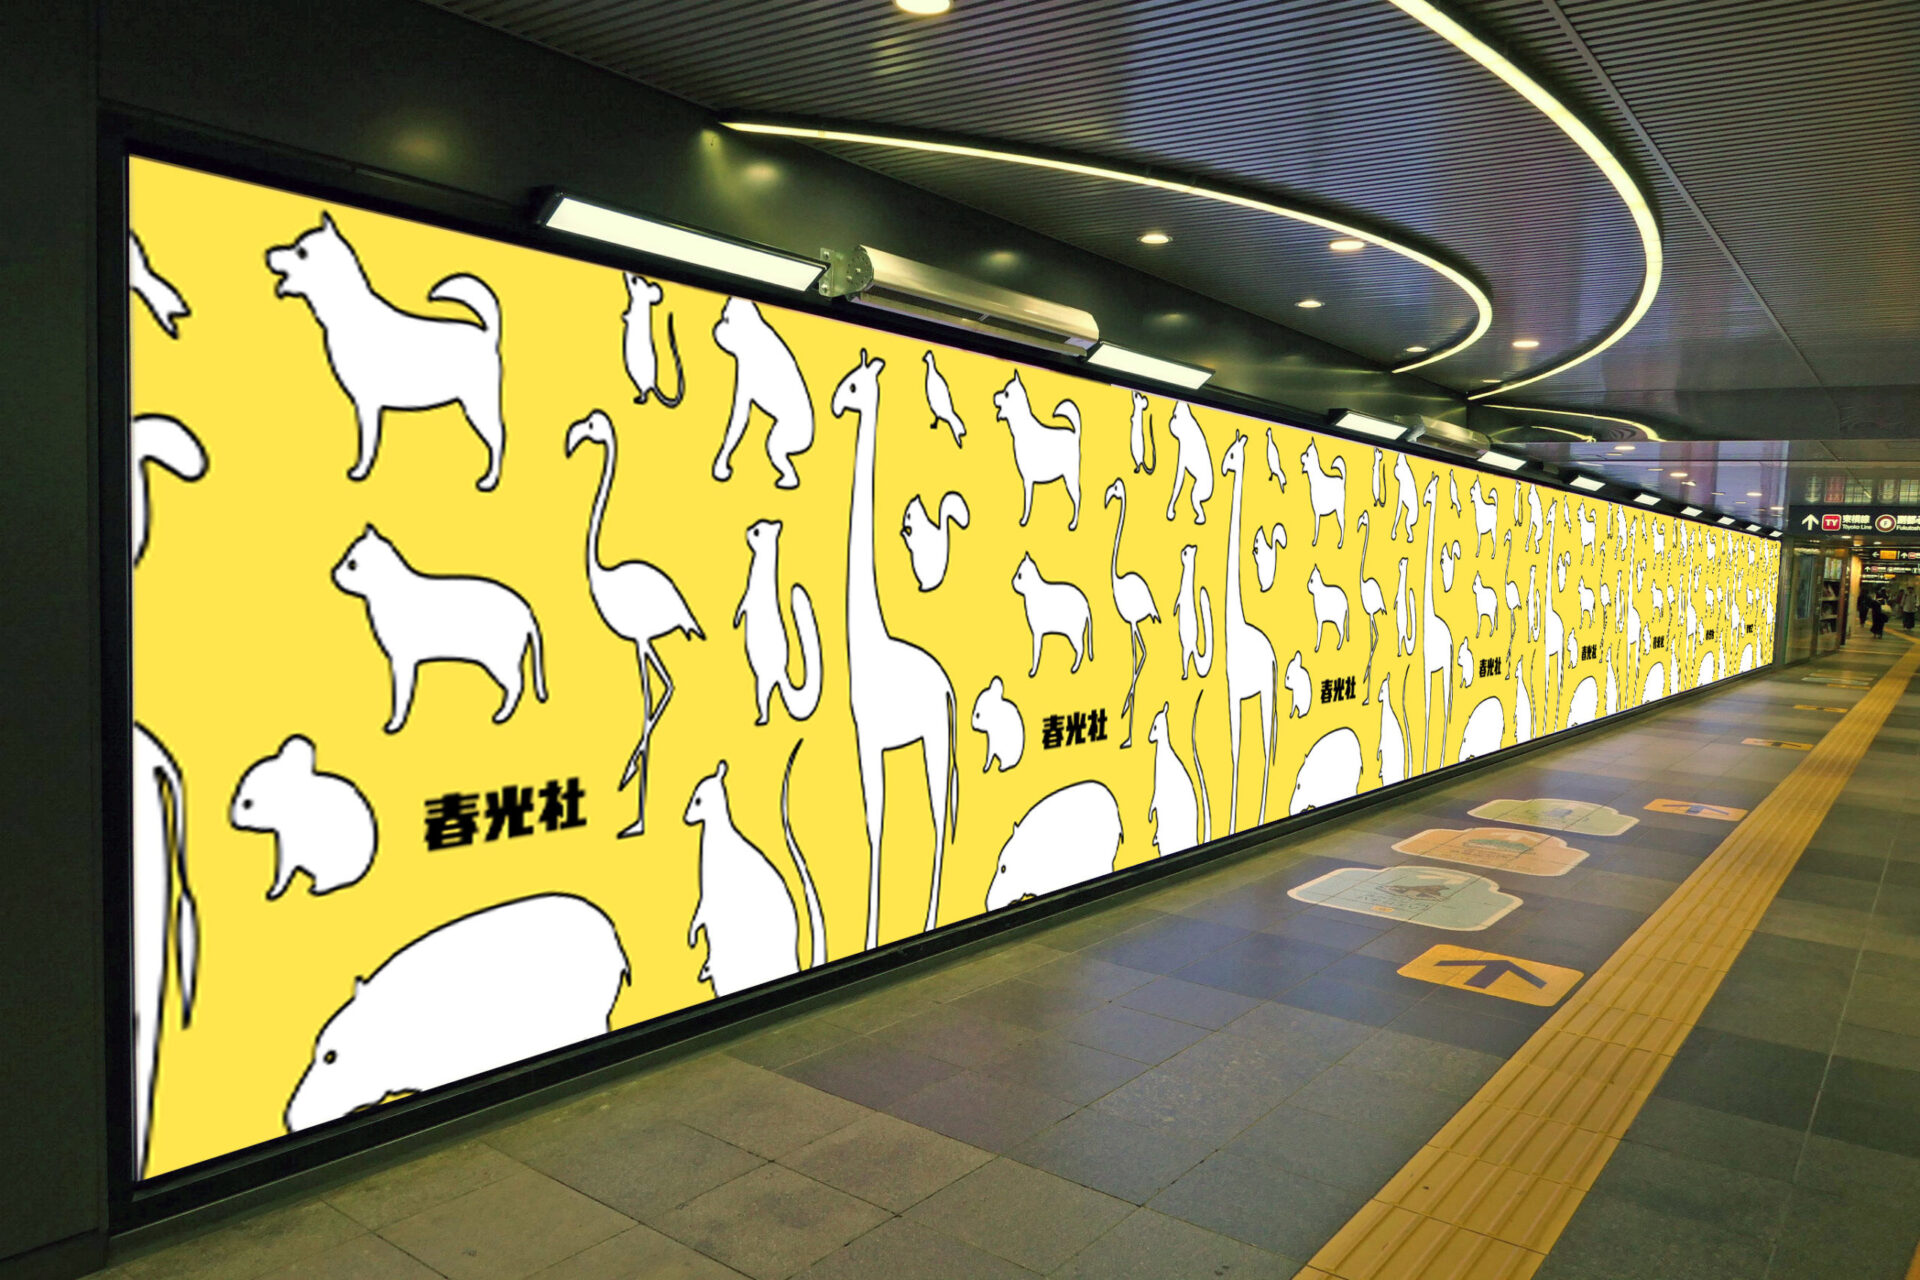 東急田園都市線渋谷駅改札側に設置されている横型の大型デジタルサイネージ